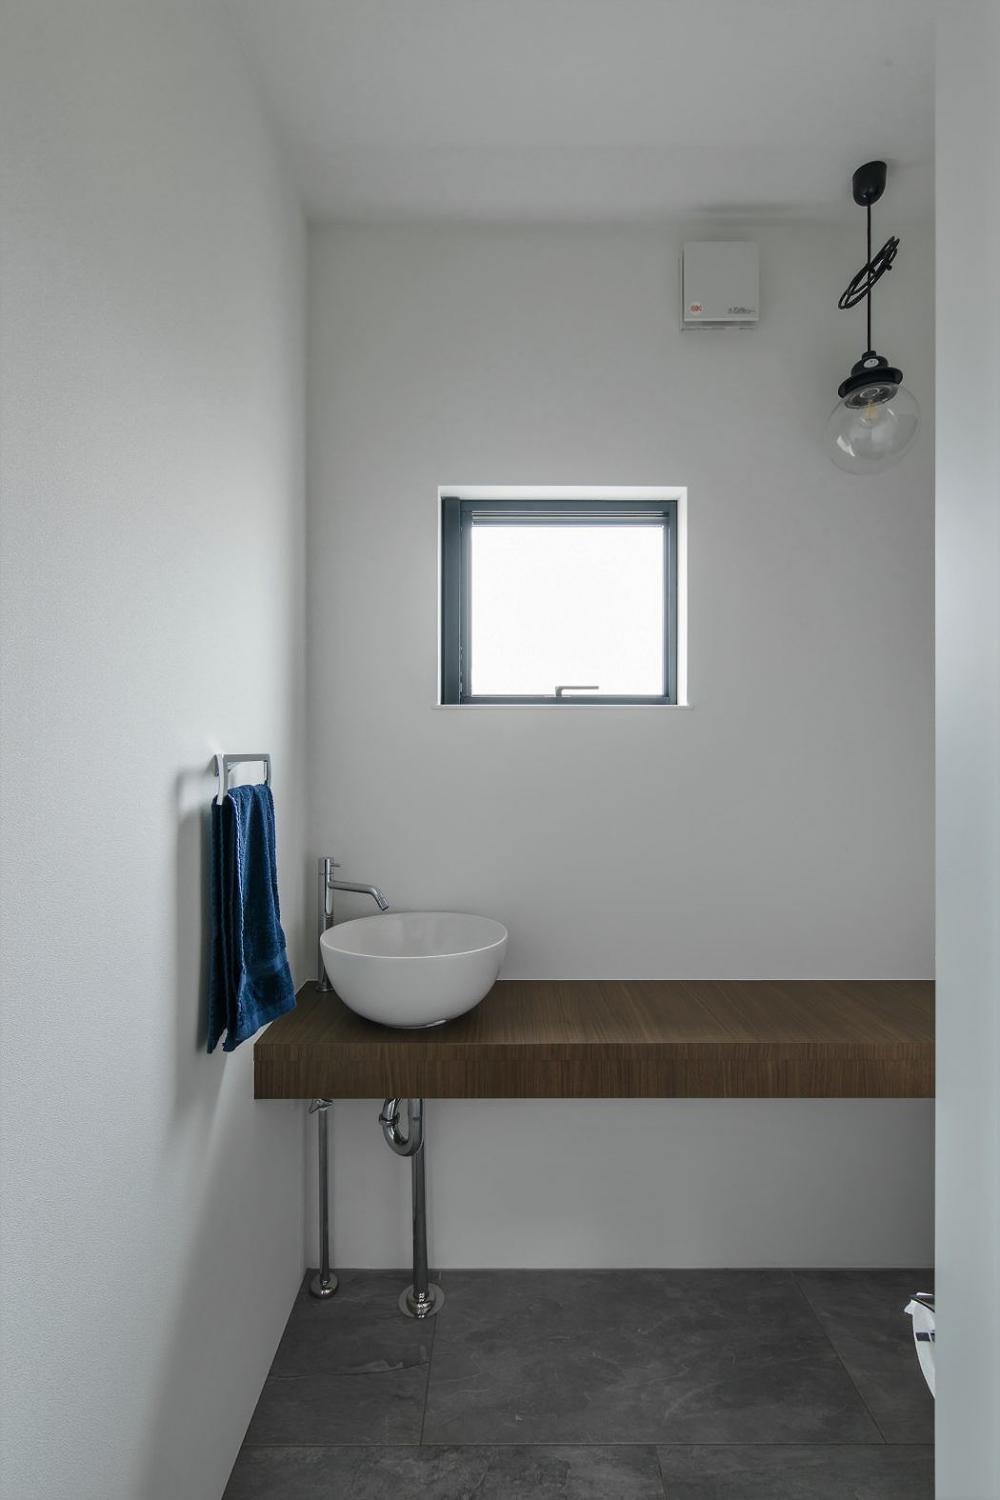 Ô cửa sổ kính mang đến nguồn sáng tự nhiên cho phòng tắm.